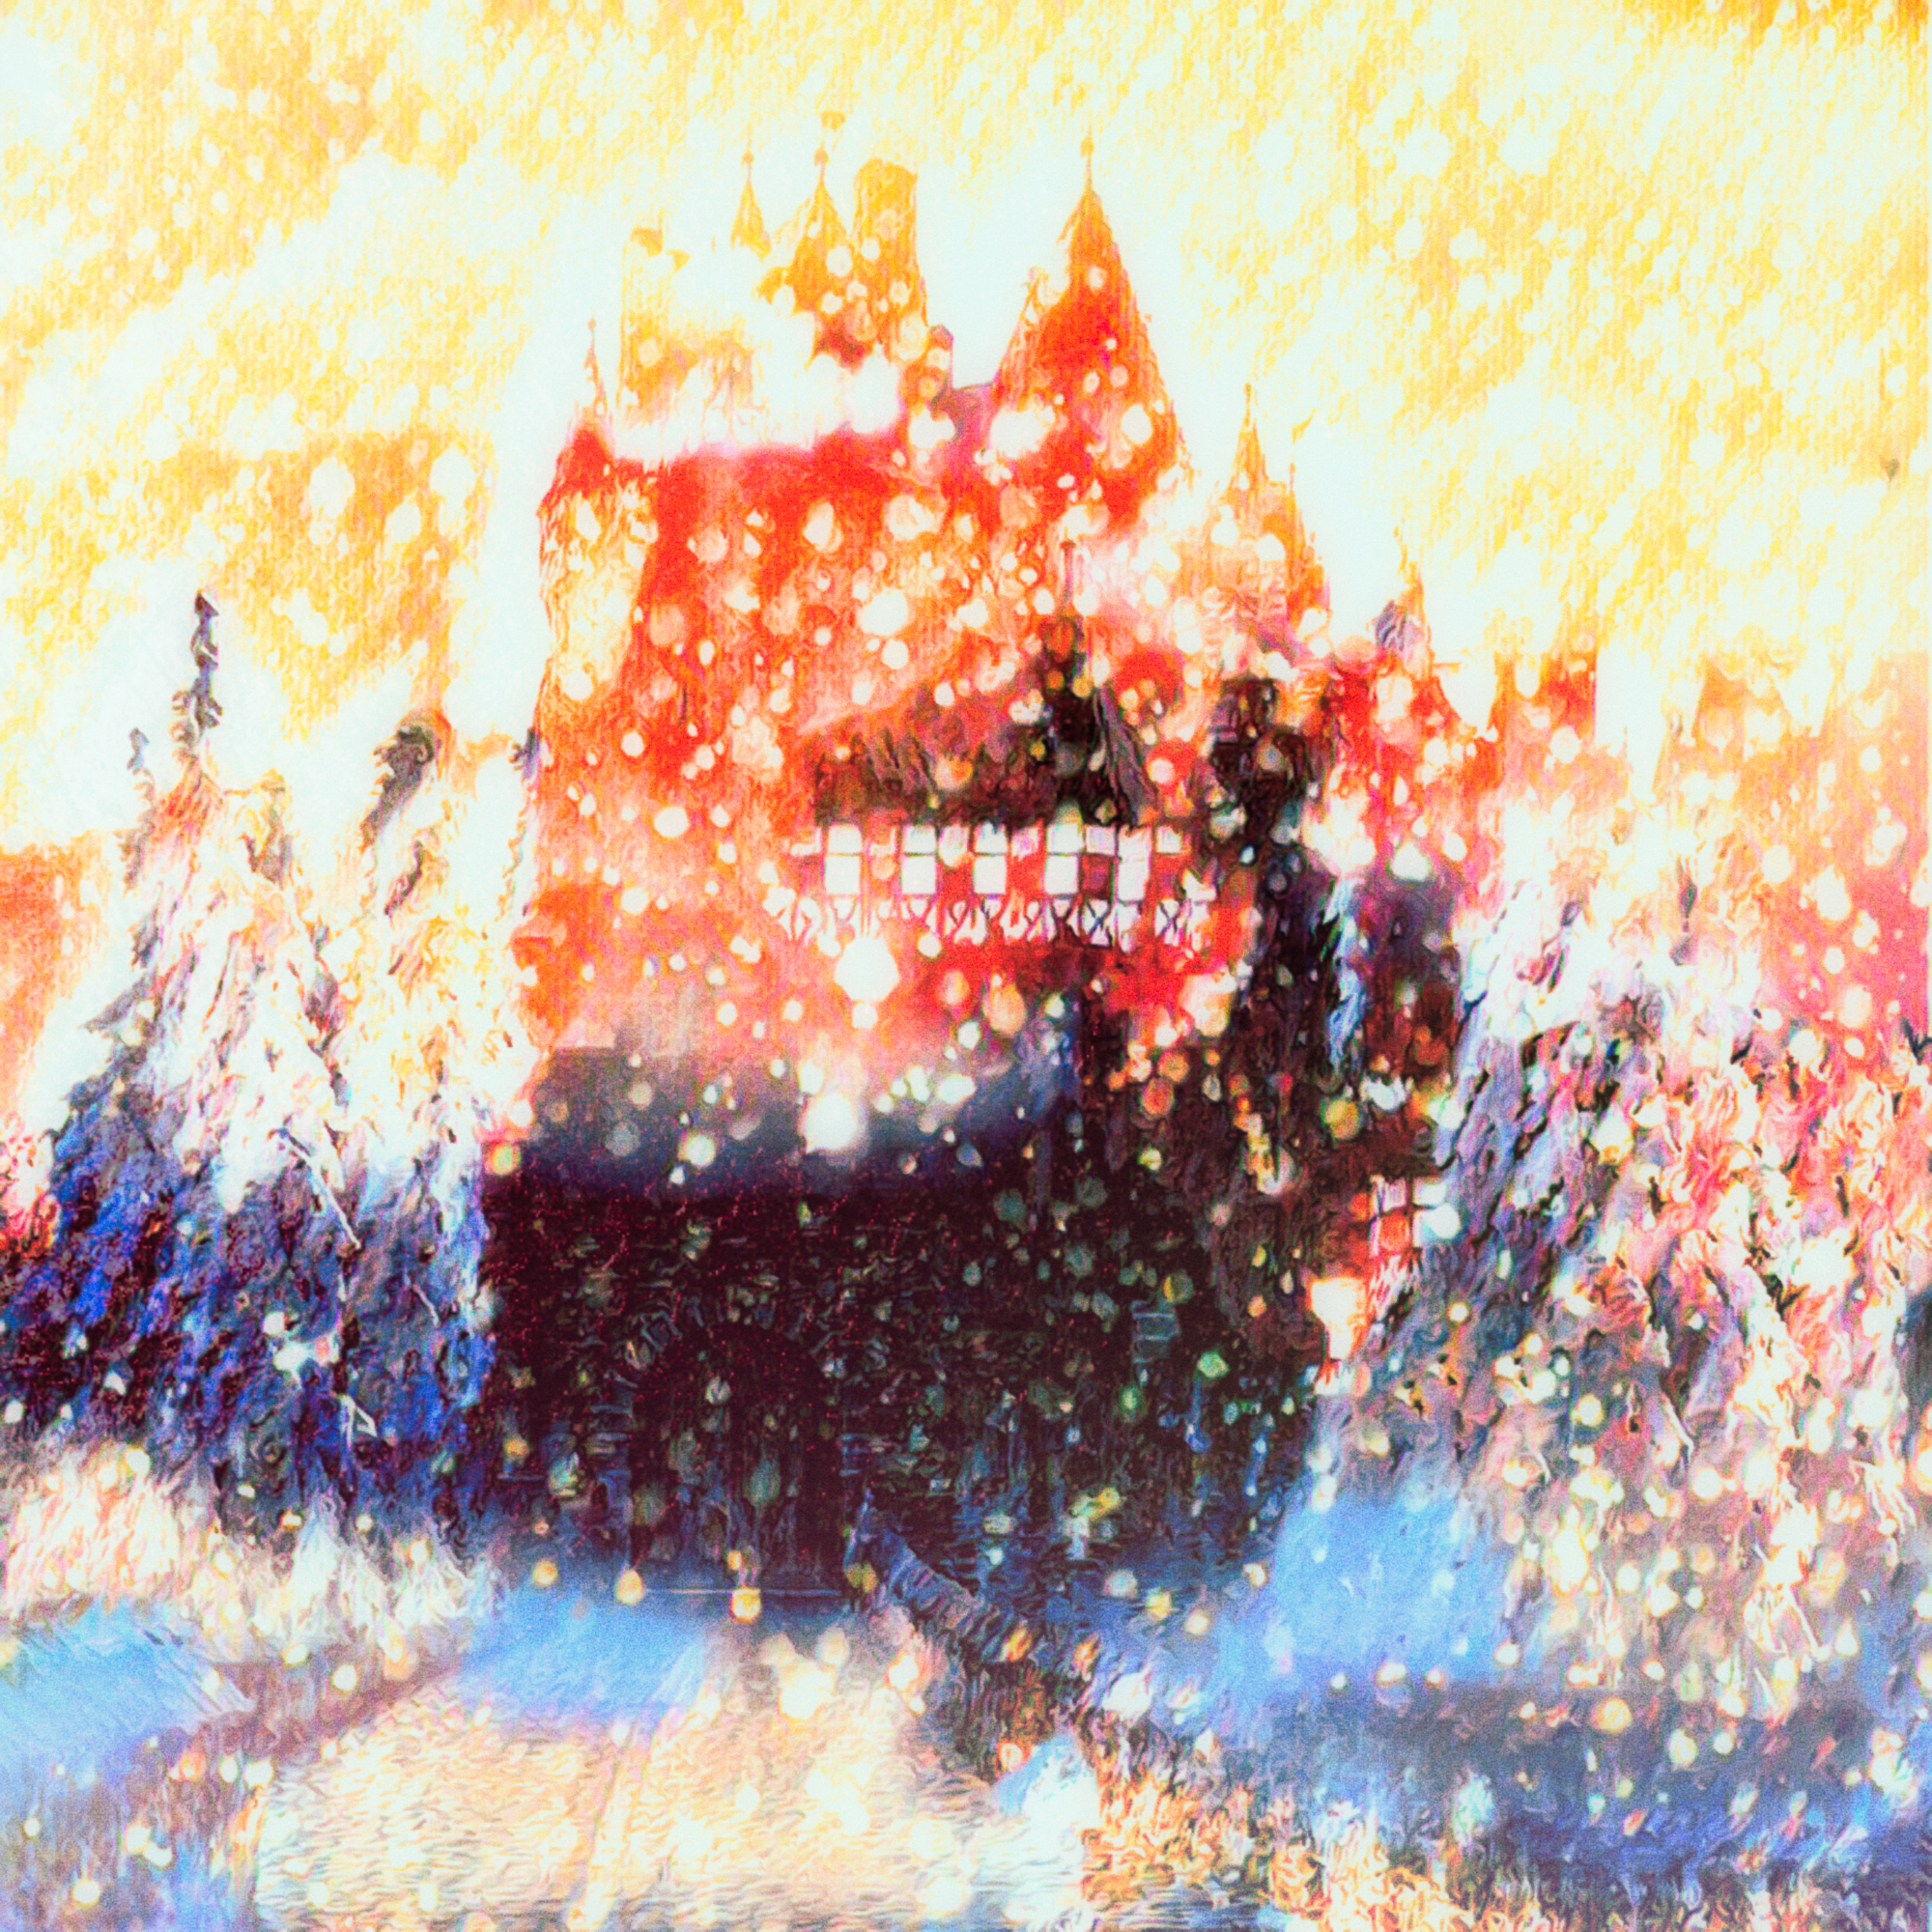 無料壁紙 背景画像 夕焼けに輝く雪山の城と幻想的な景色 Free Illustlation くりえいてぃぶ